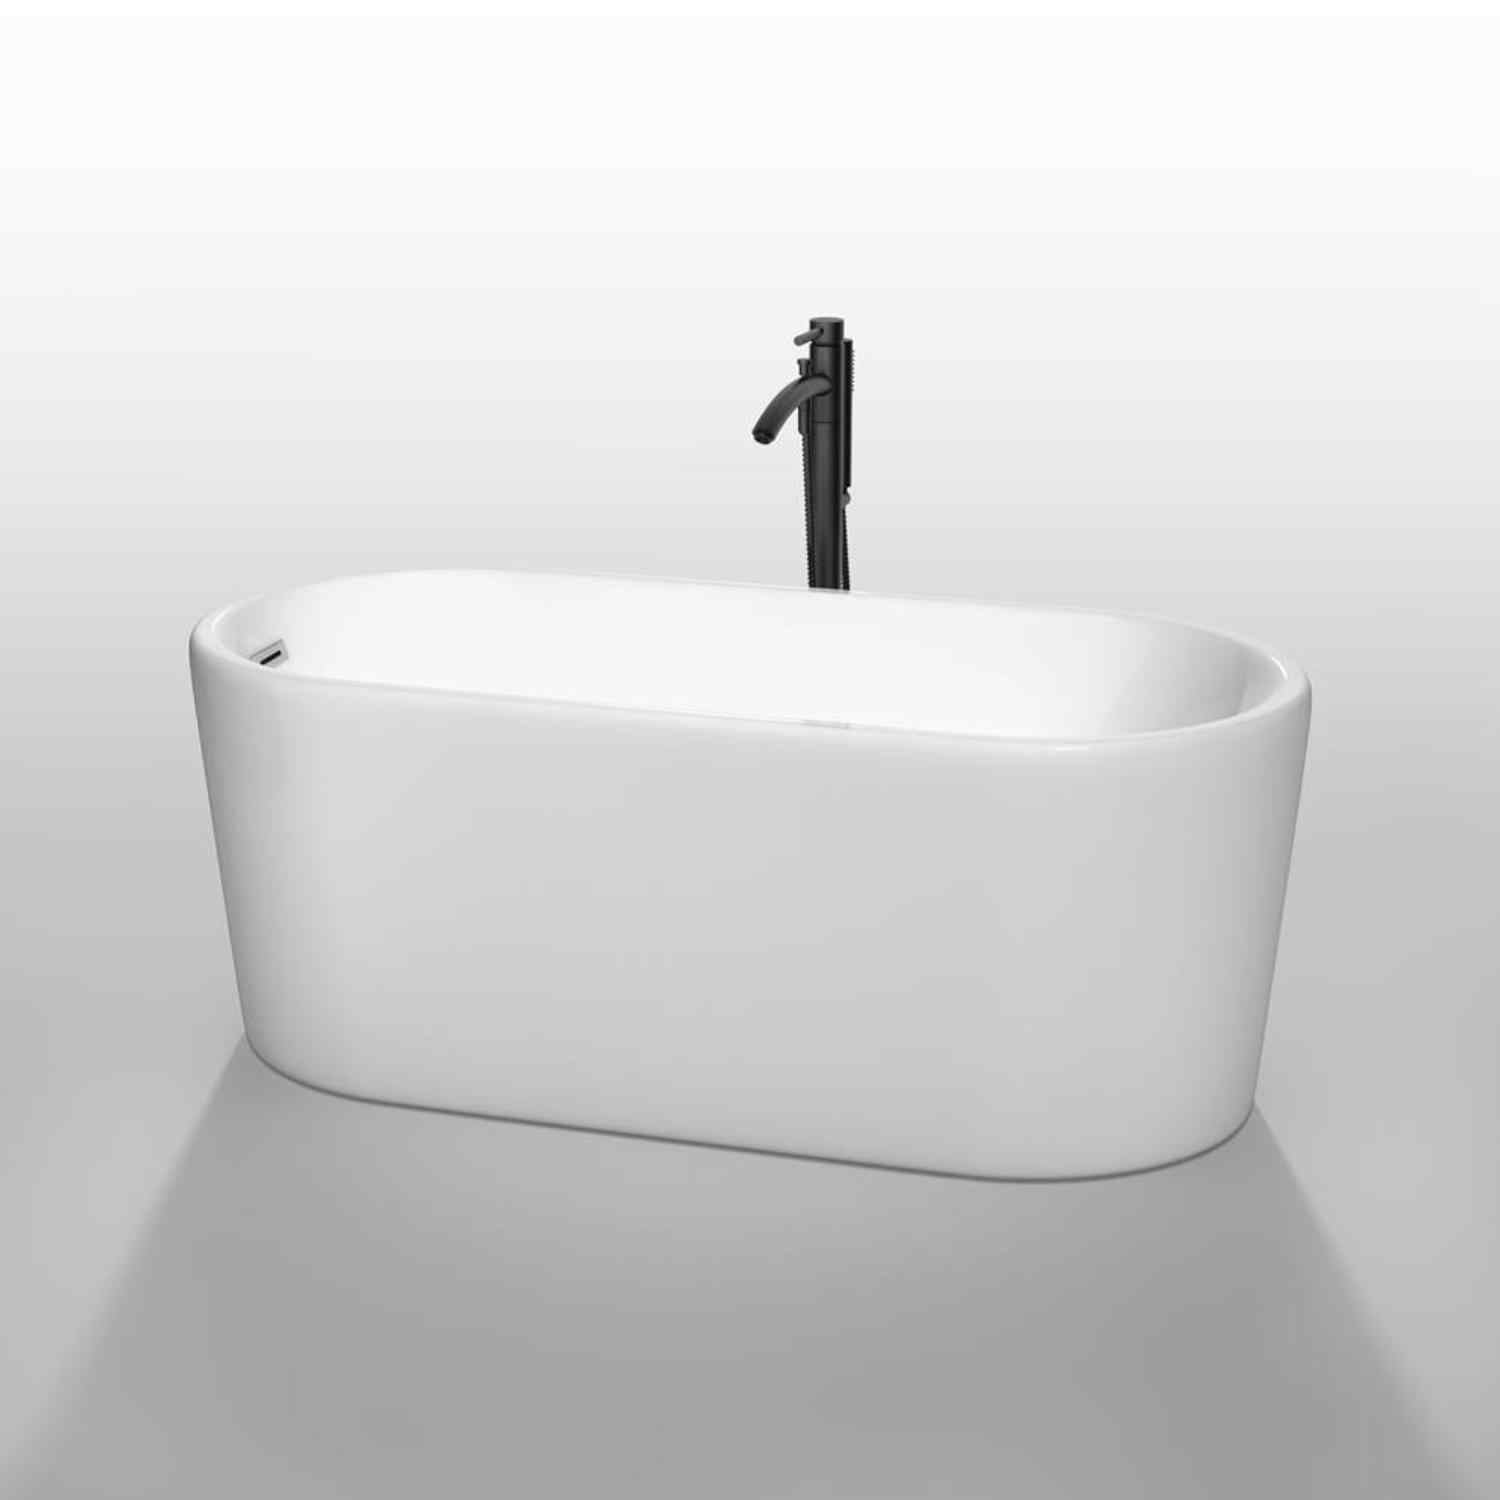 Wyndham collection Ursula 59 Inch Freestanding Bathtub in White black fuchet